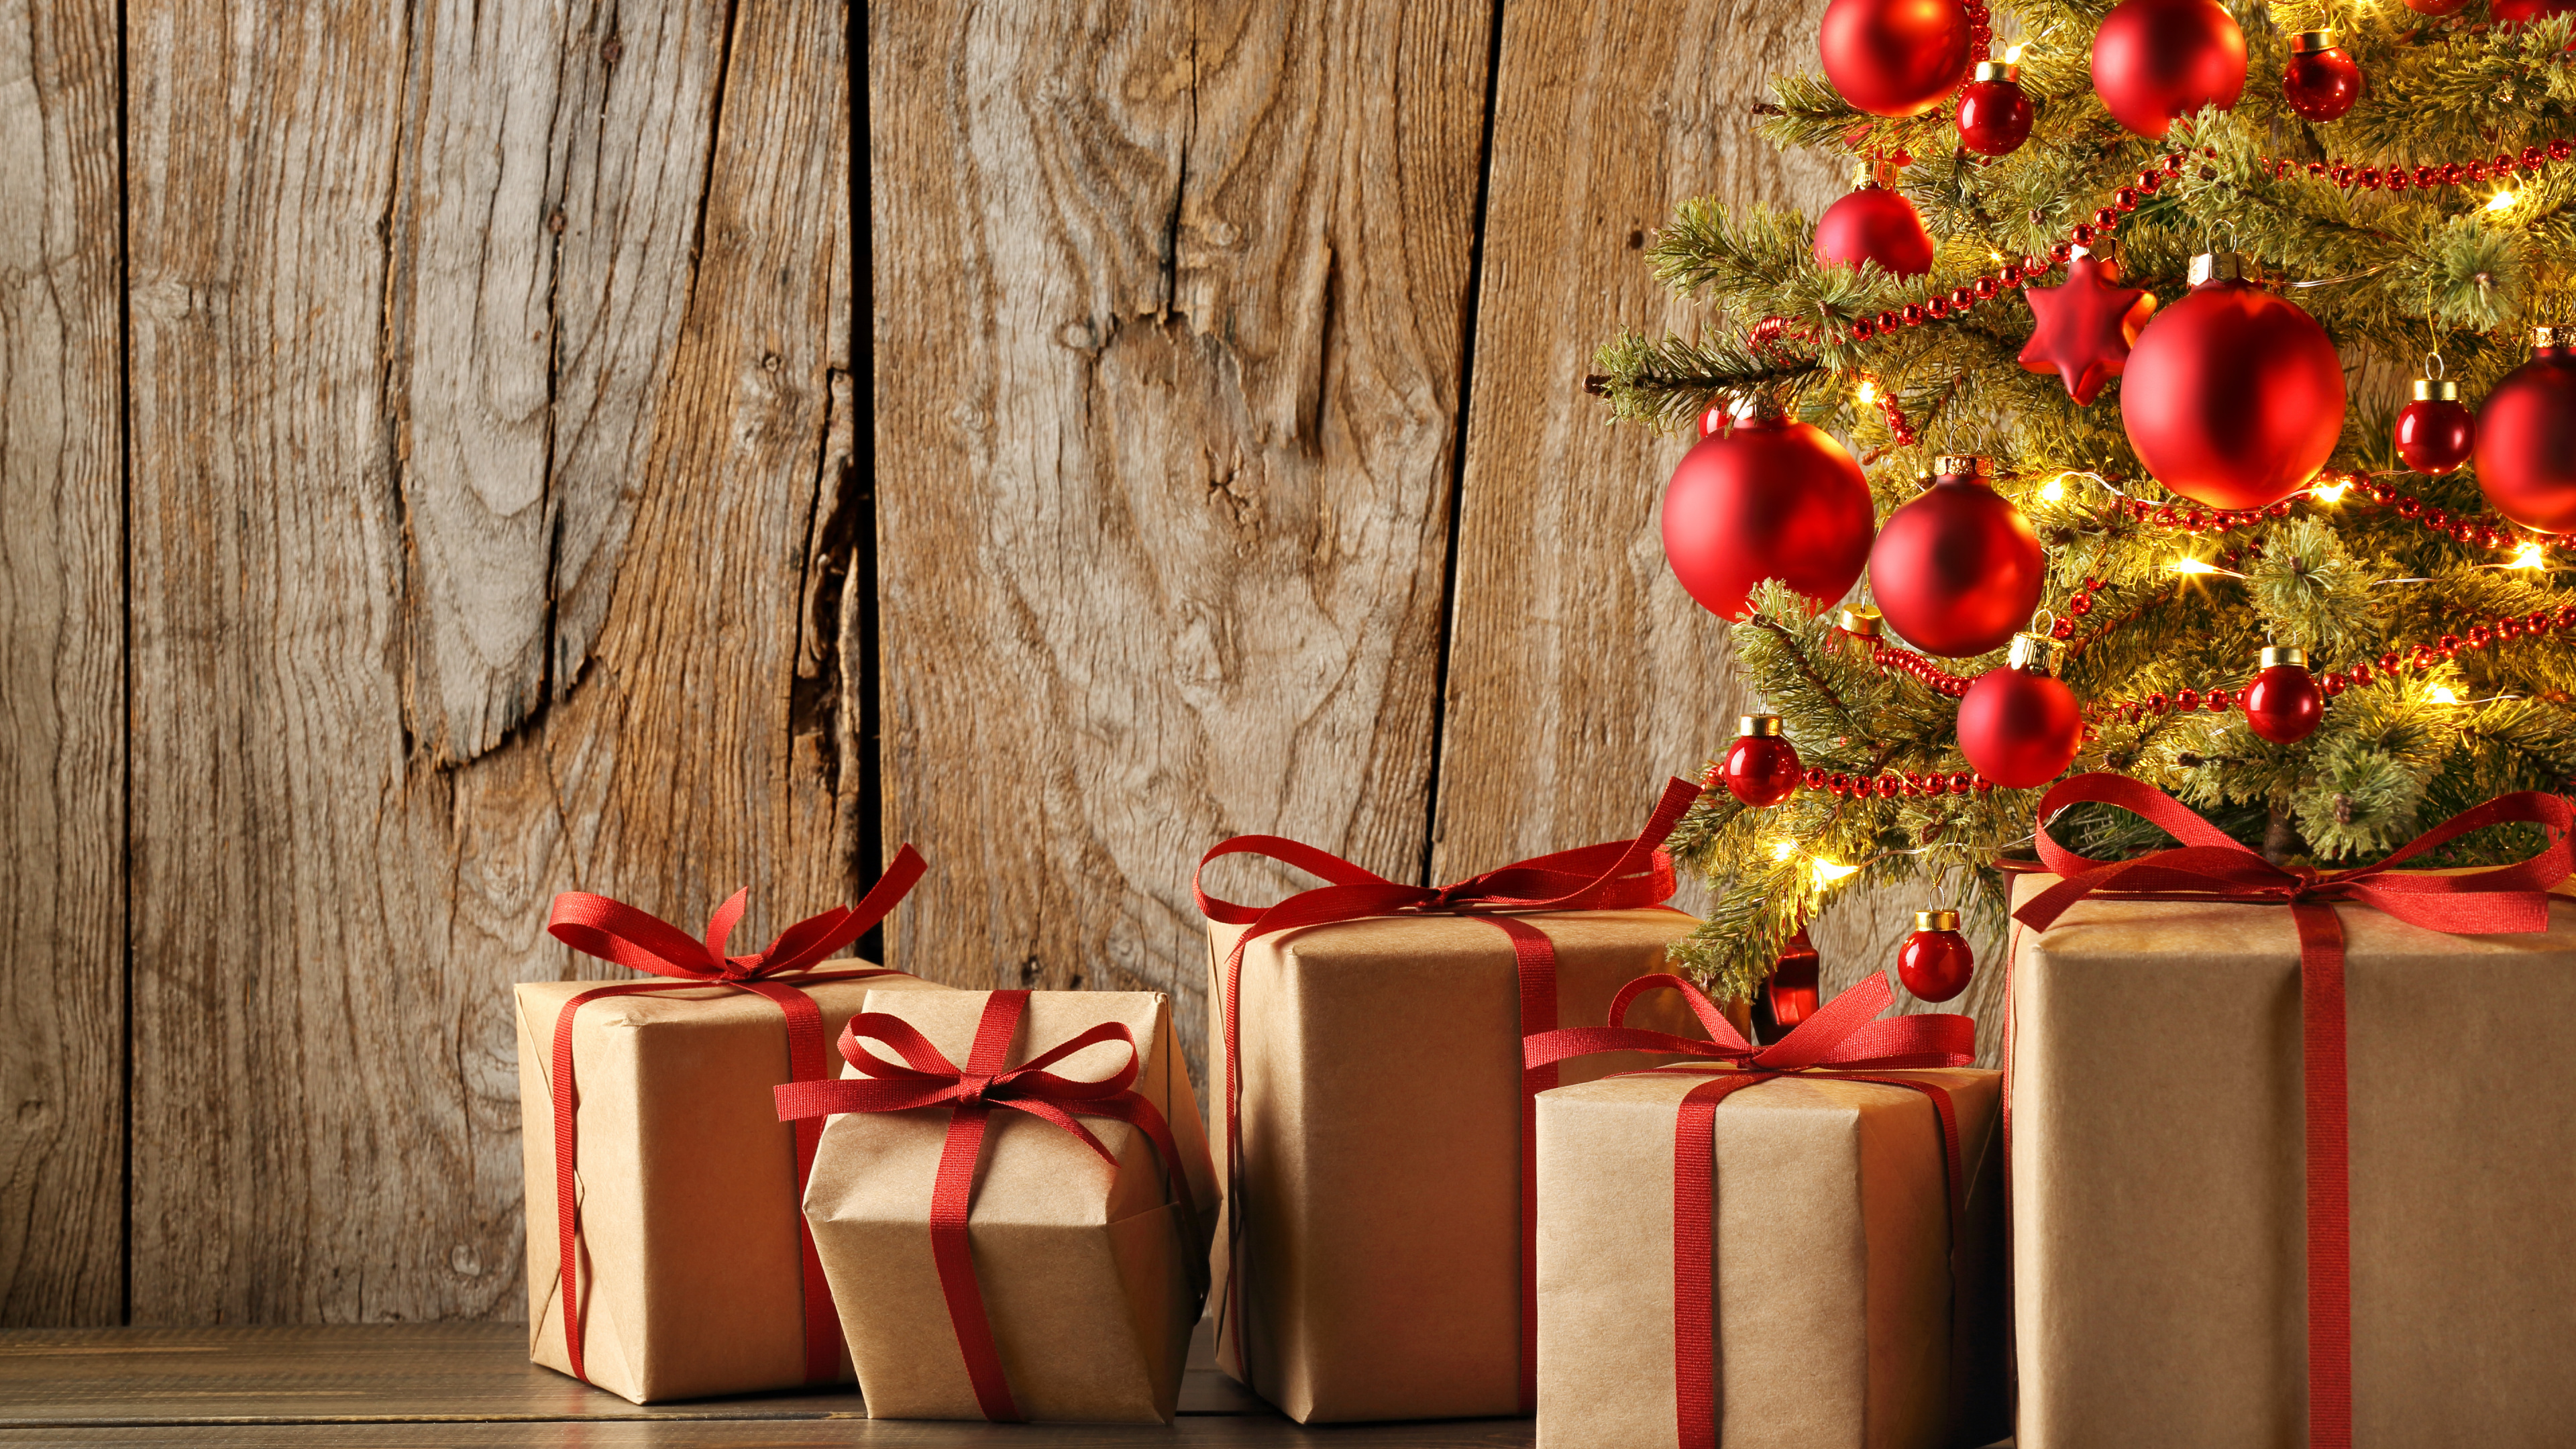 圣诞节那天, 礼物, 圣诞节的装饰品, 礼品包装, 新的一年 壁纸 3840x2160 允许